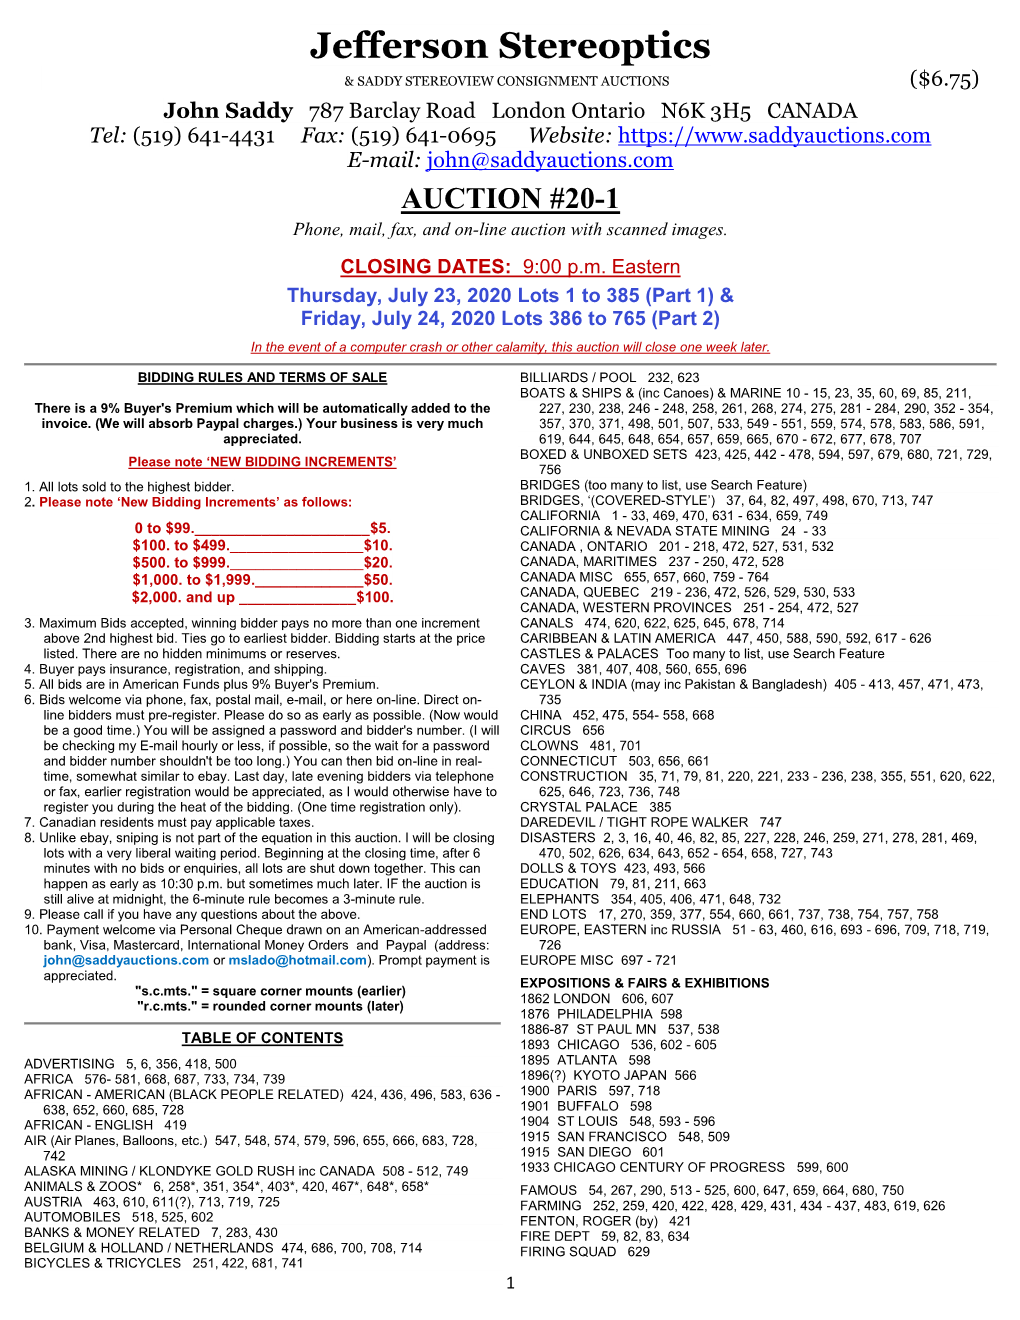 20-1 Auction Catalog PDF Download